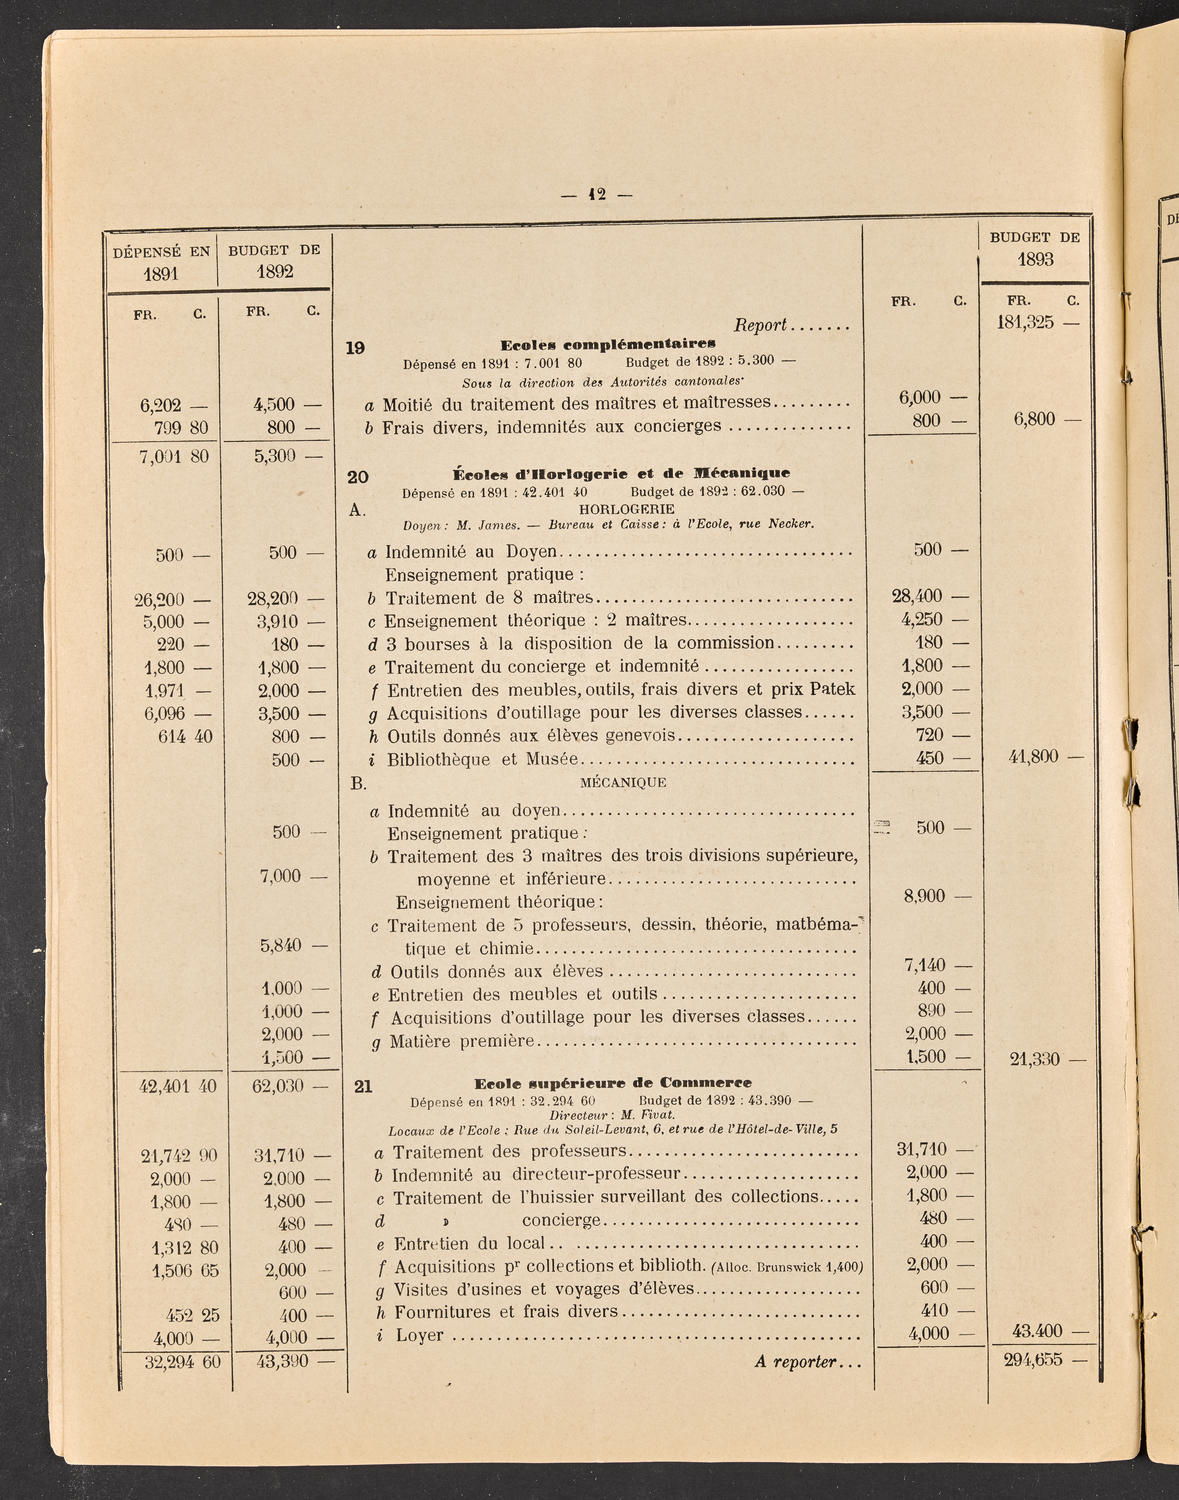 Budget de la Ville de Genève - Exercise de 1893, page 18 of 32